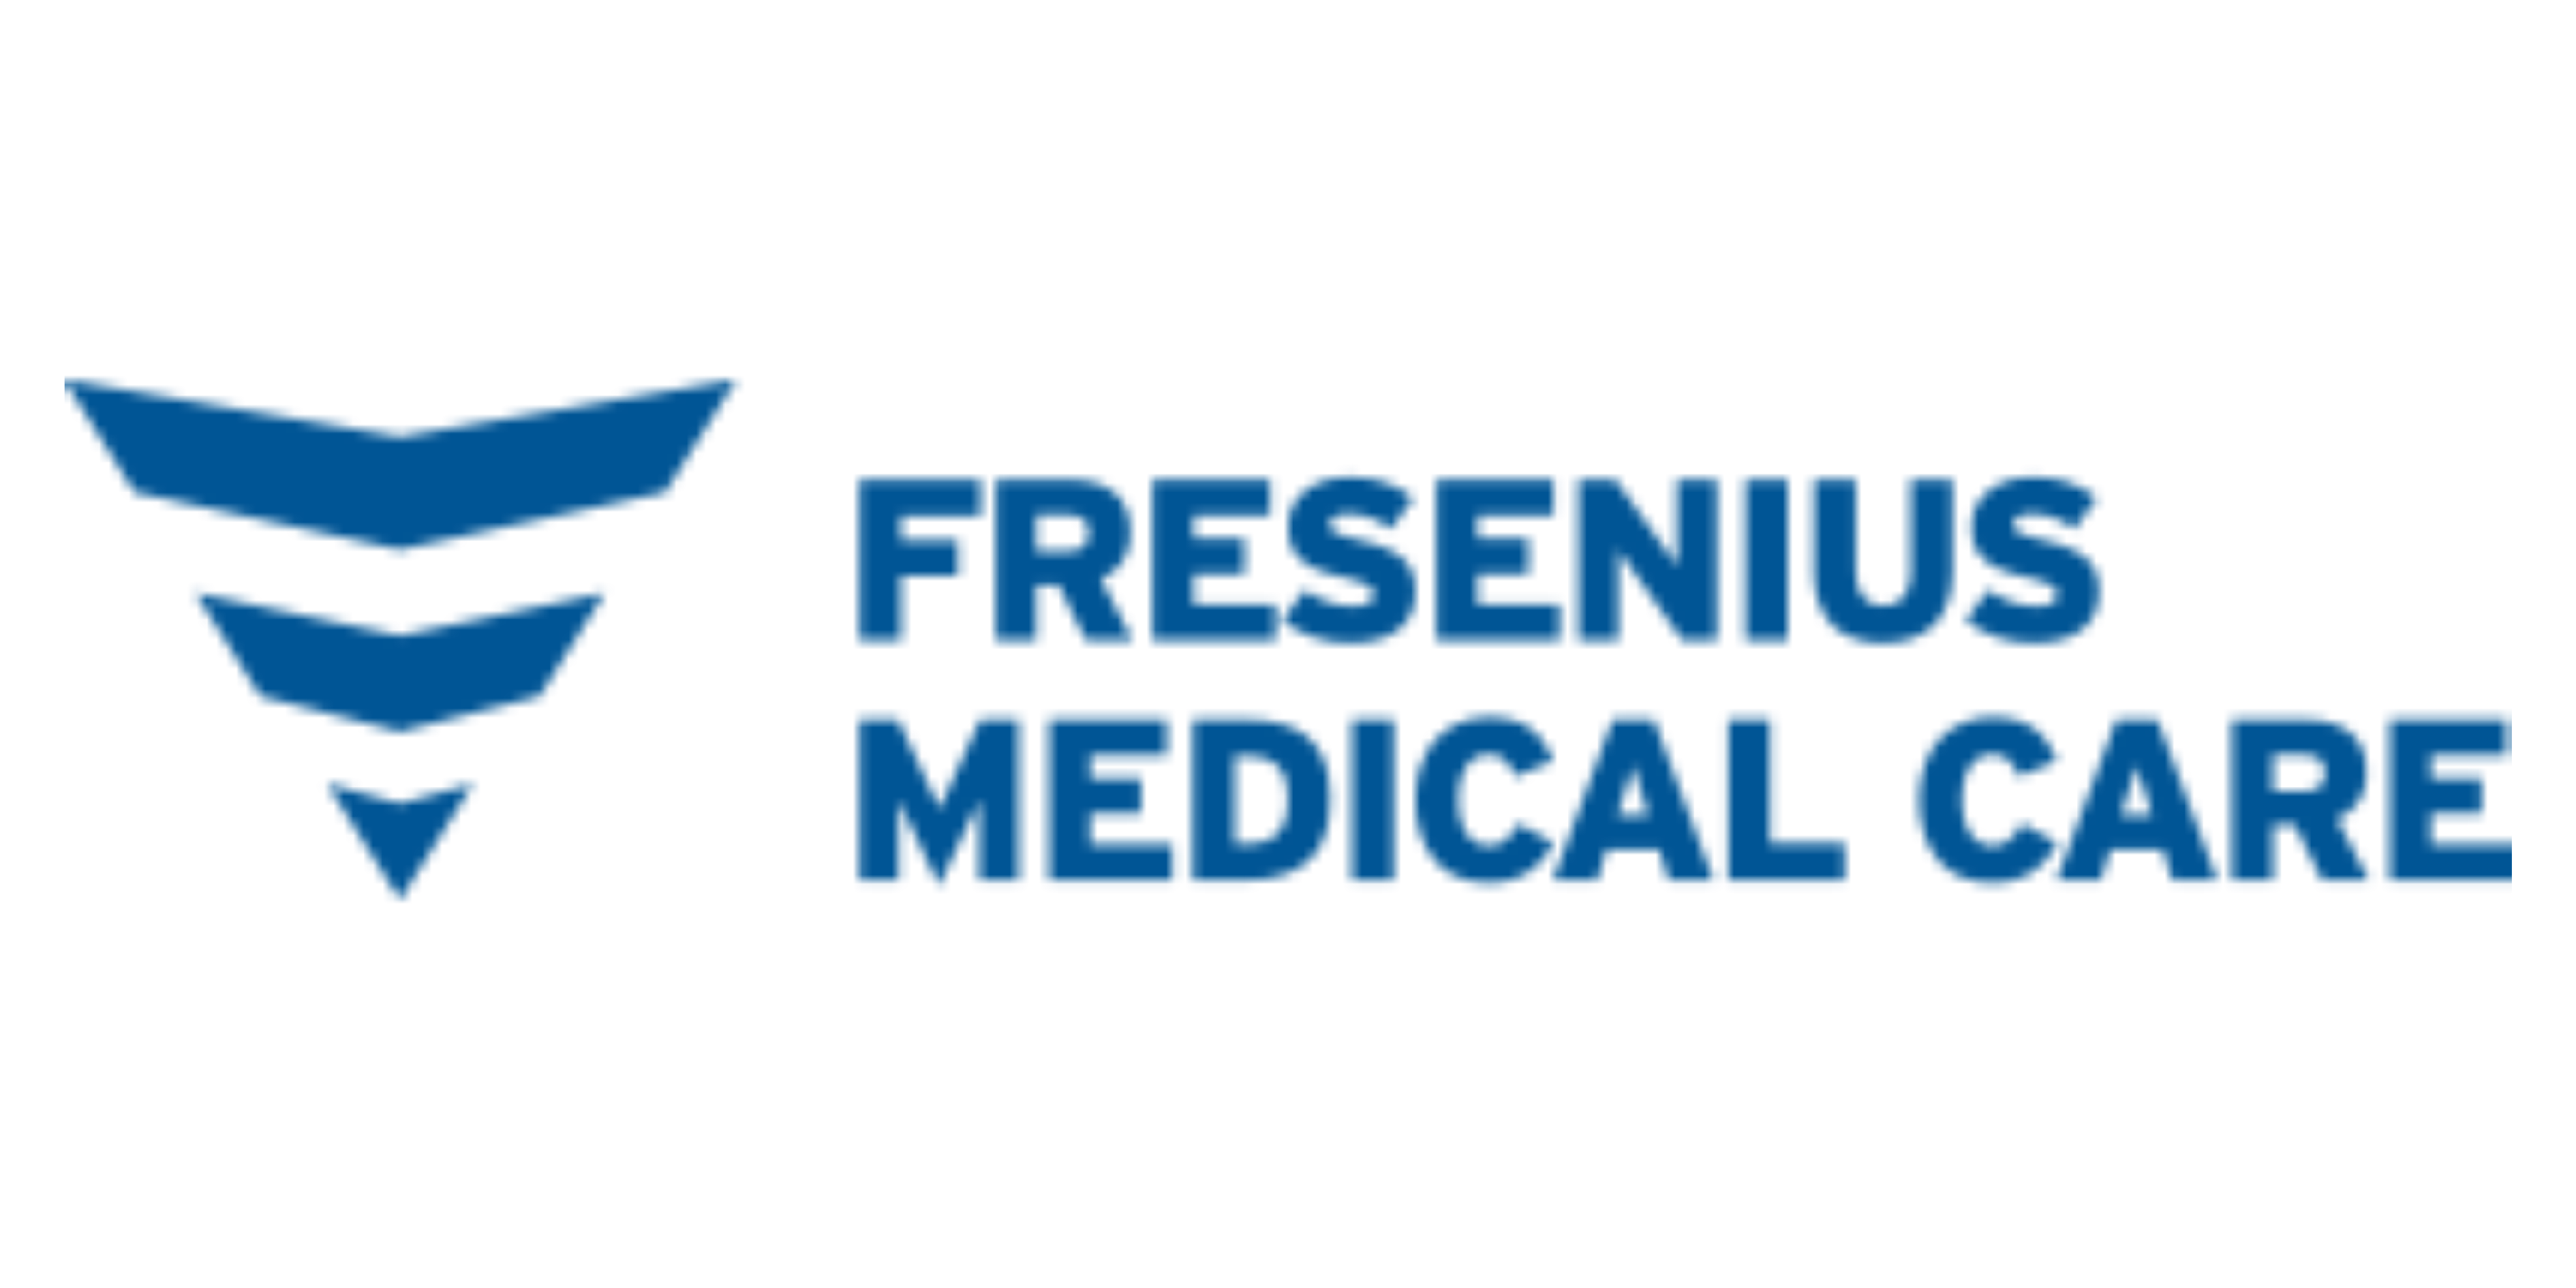 Fresenisu Medical Care logo